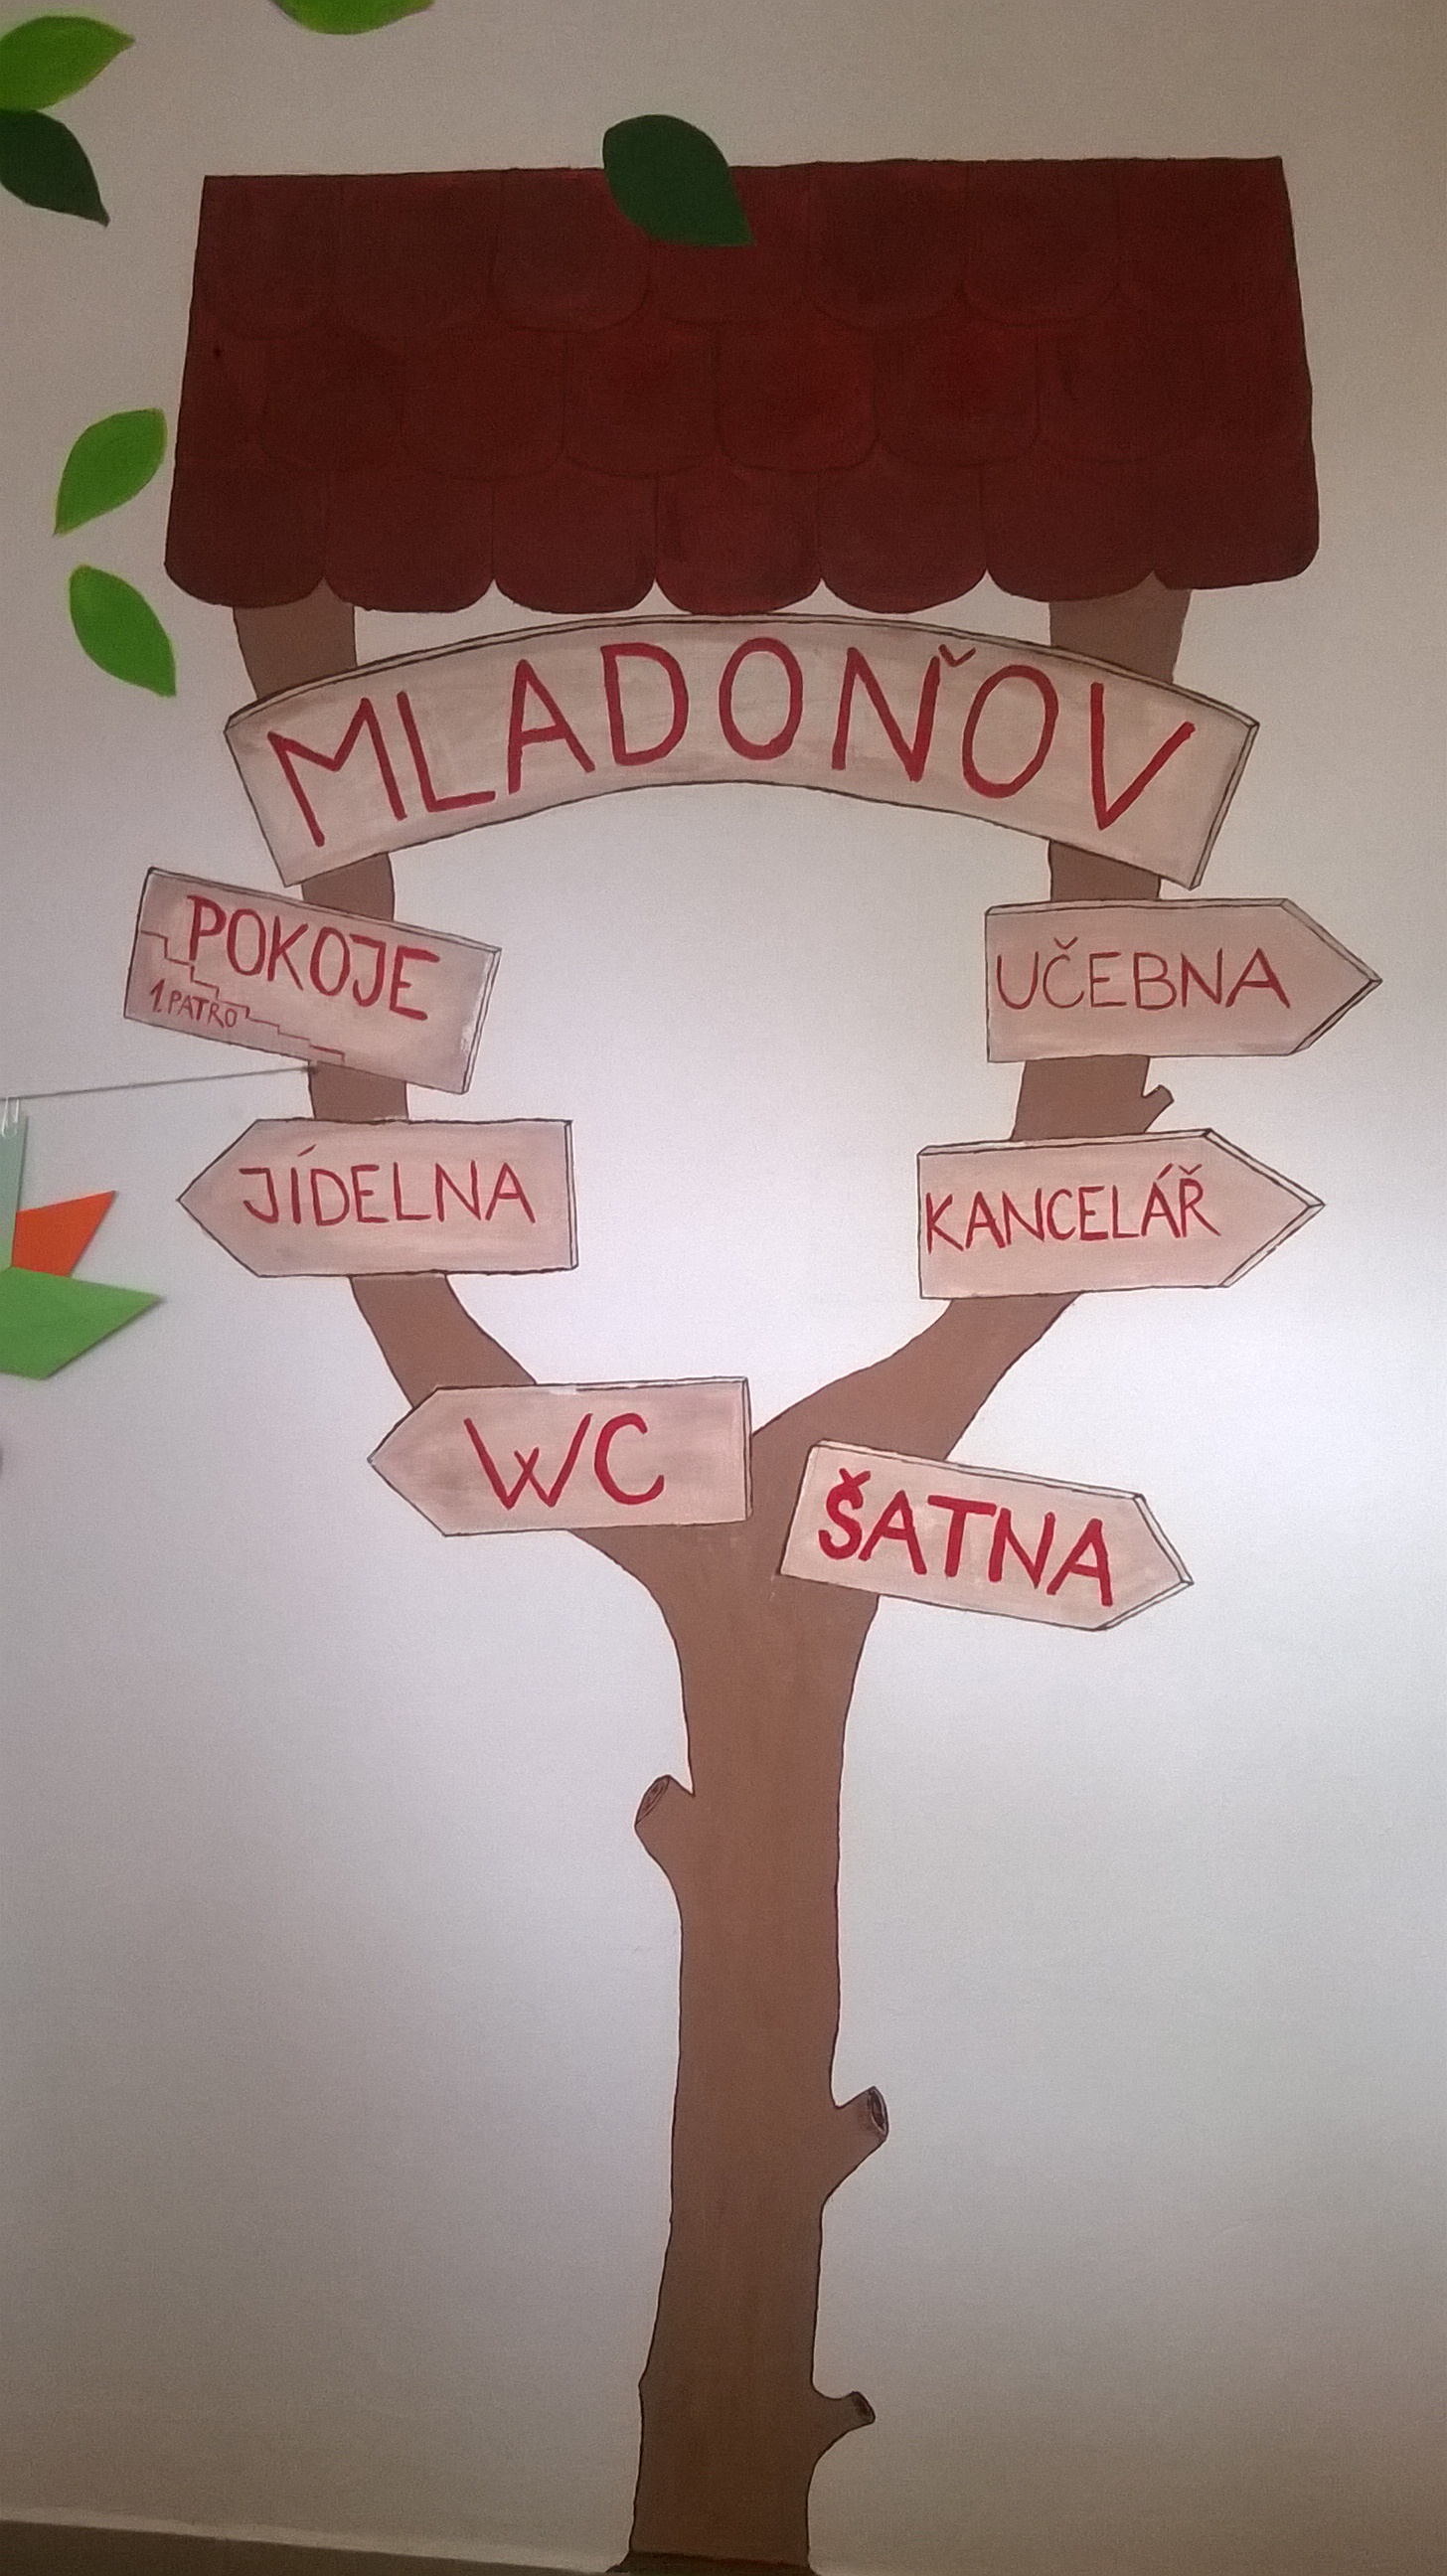 Mladonov_40